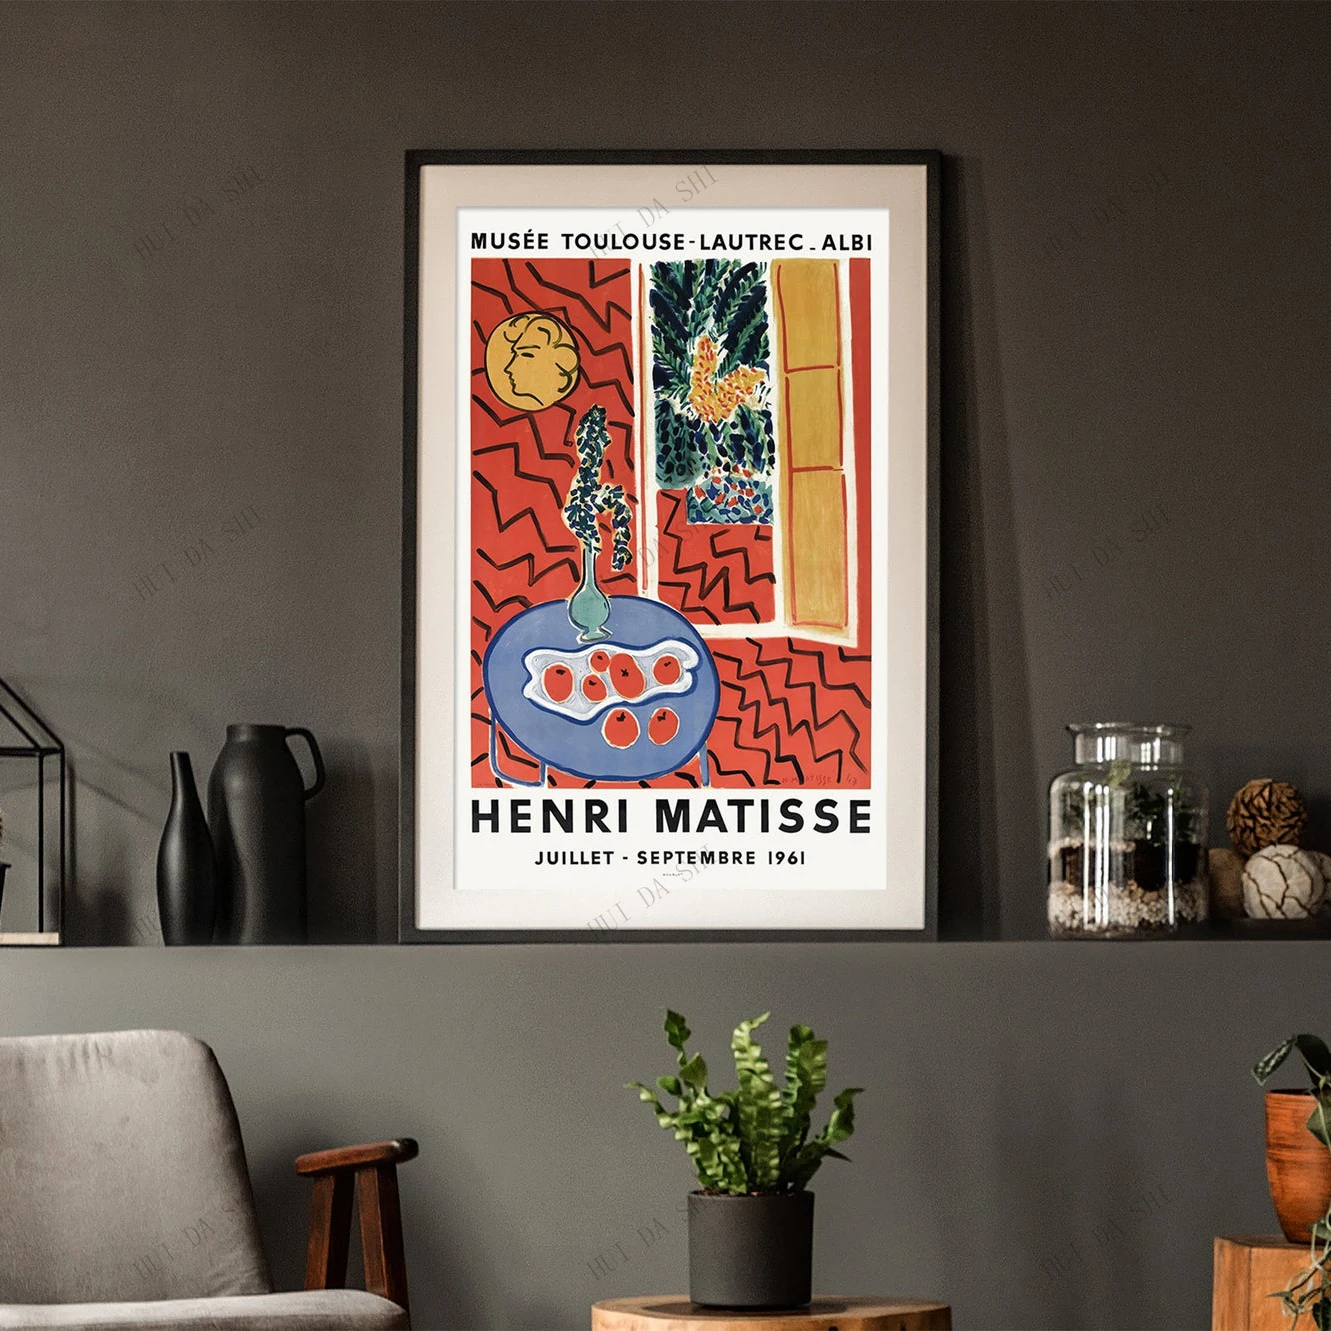 Постер Анри матиссе принт Матисса выставочный постер дешевое настенное